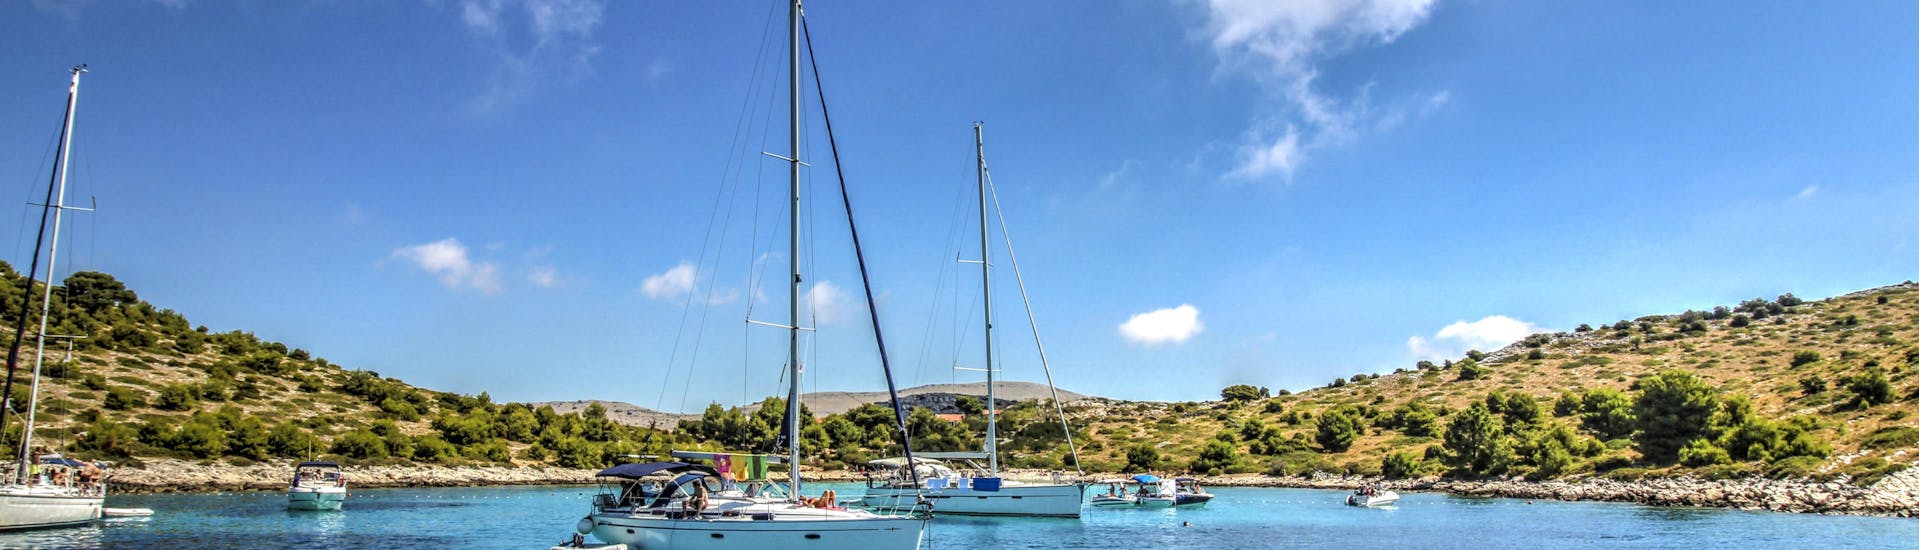 Alcune barche vicino alla costa durante la gita in barca alle isole Kornati.